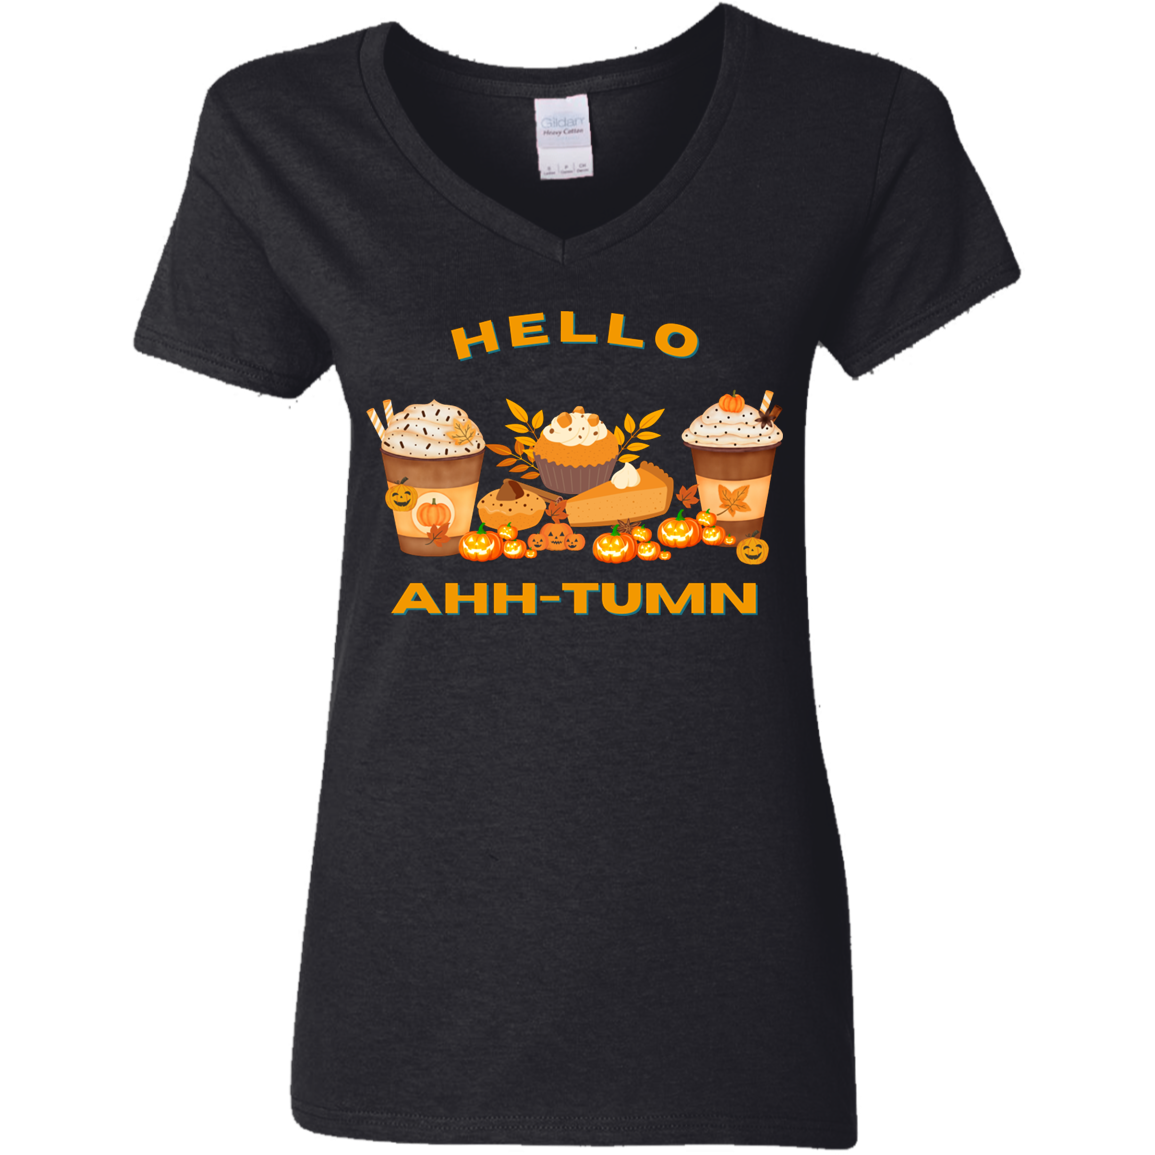 Hello Ahh-tumn V-Neck T-Shirt